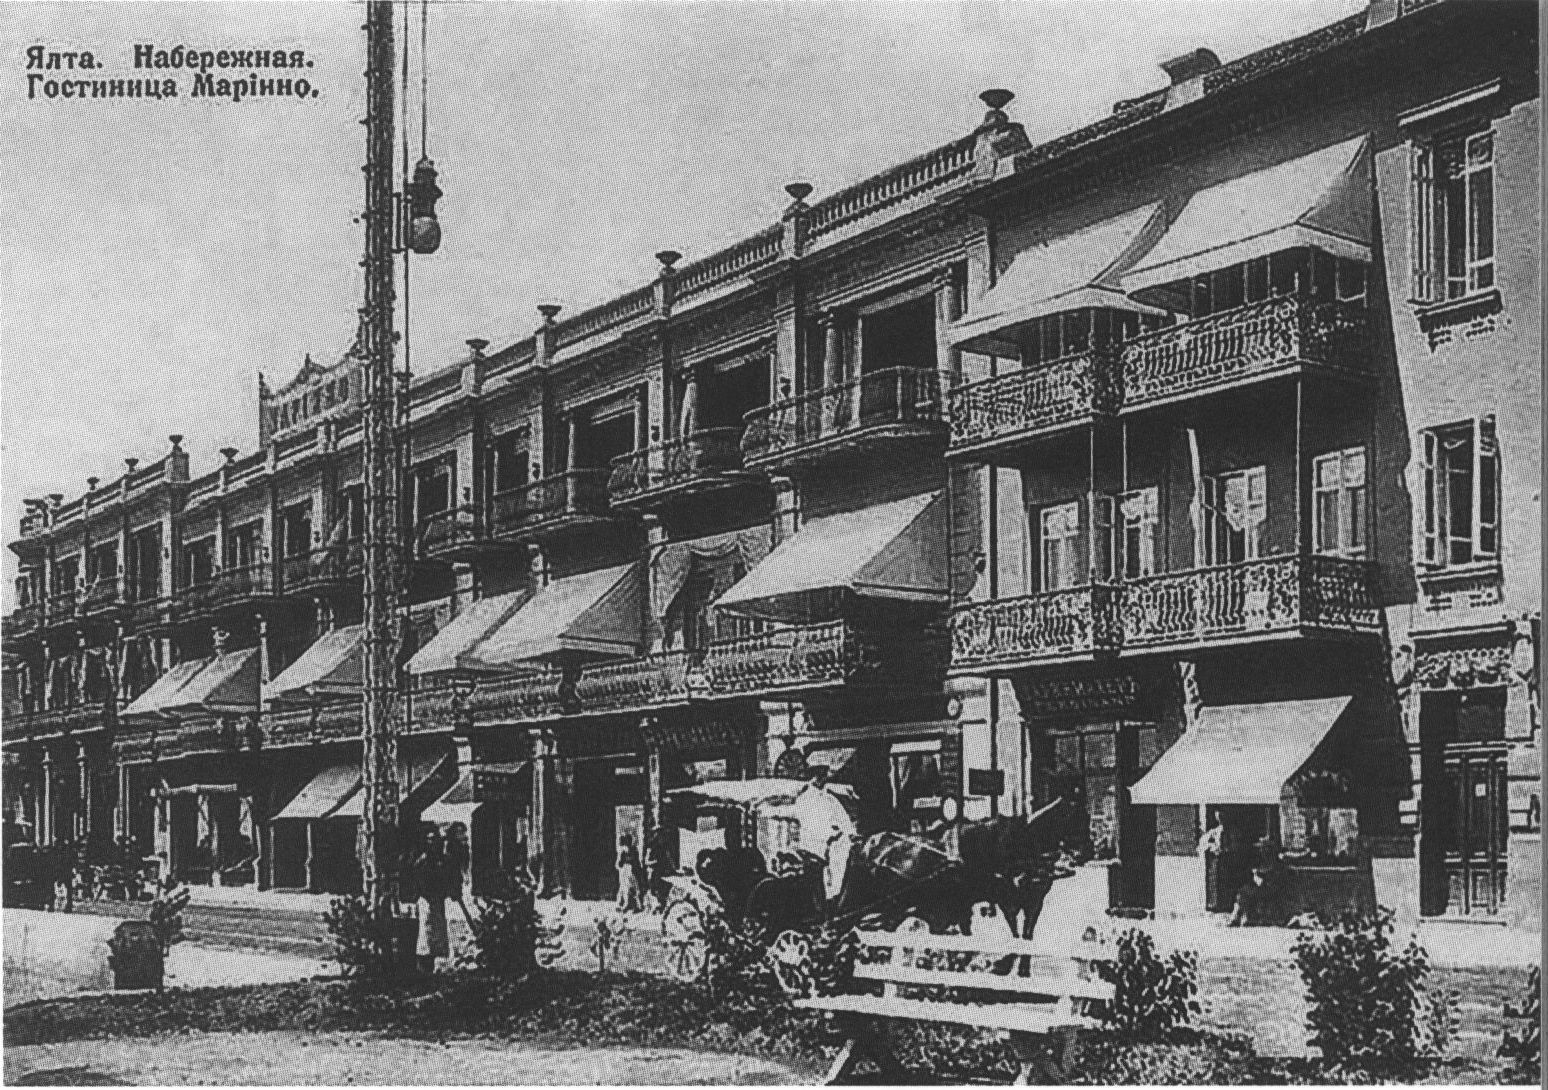 Гостиница «Мариино» в Ялте. Открытка. 1895 г.